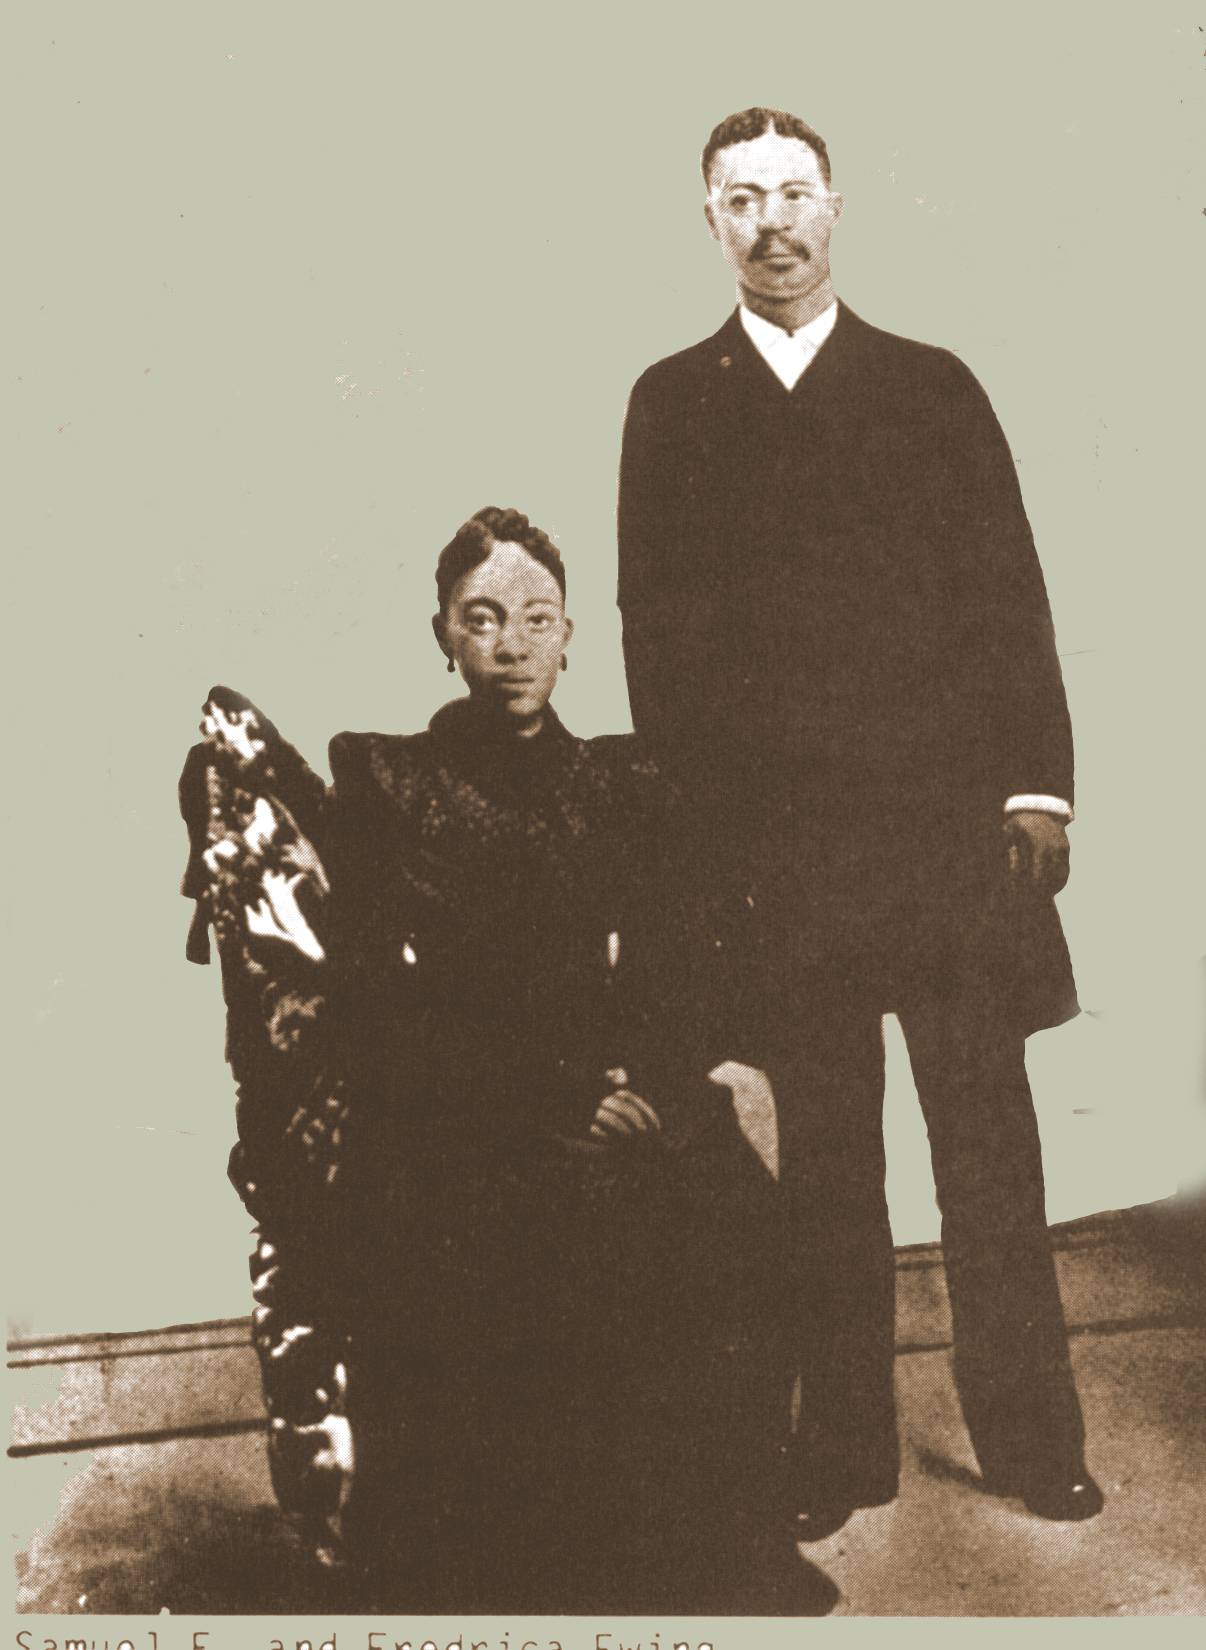 Rev. Samuel E. Ewing and Fredrica Ewing - parents of Anna 